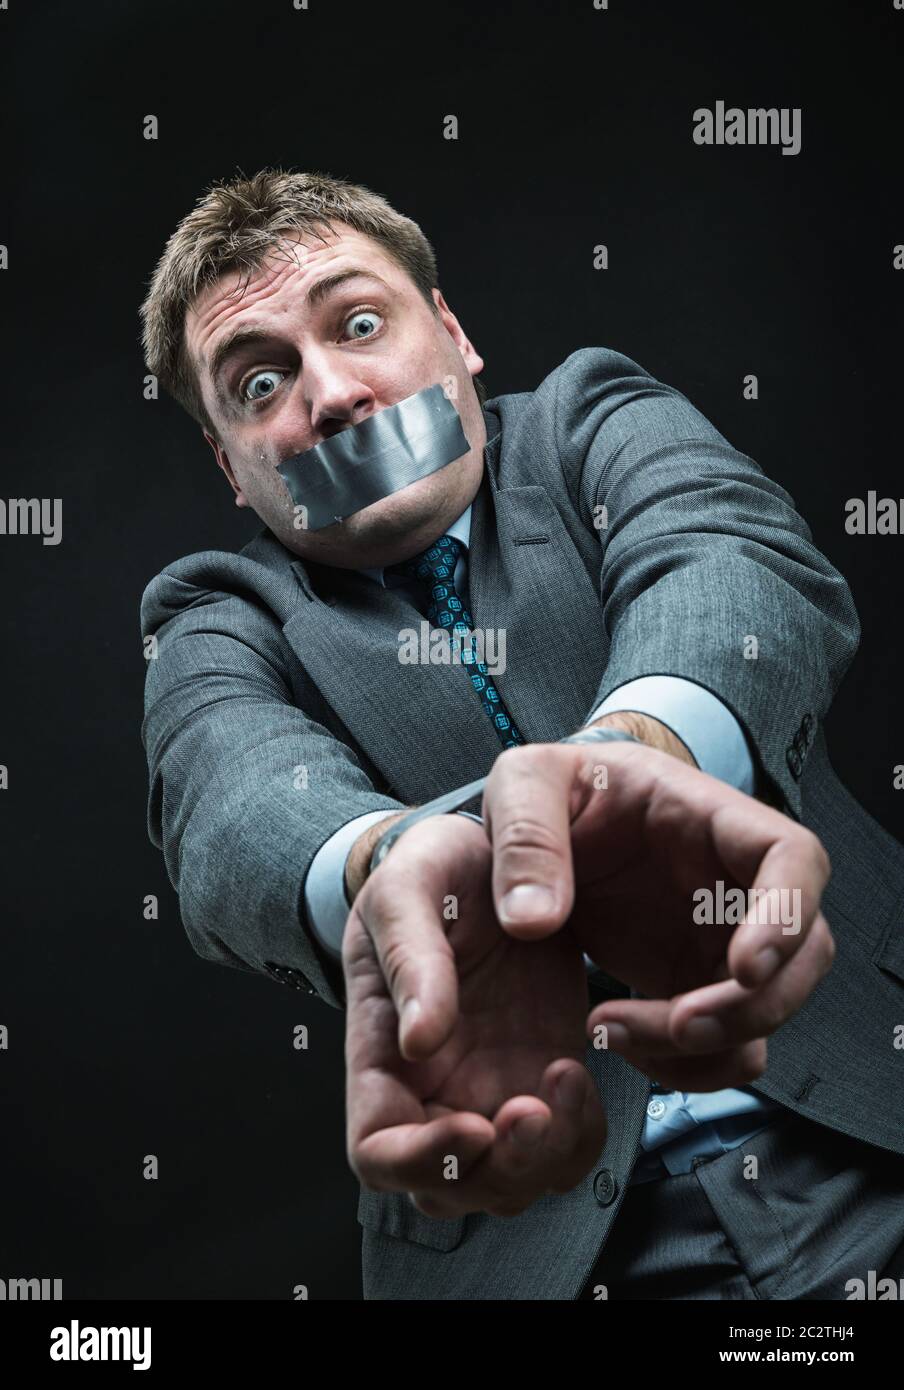 Mann mit Mund und Händen bedeckt durch Klebeband, Studio-Shooting Stockfoto